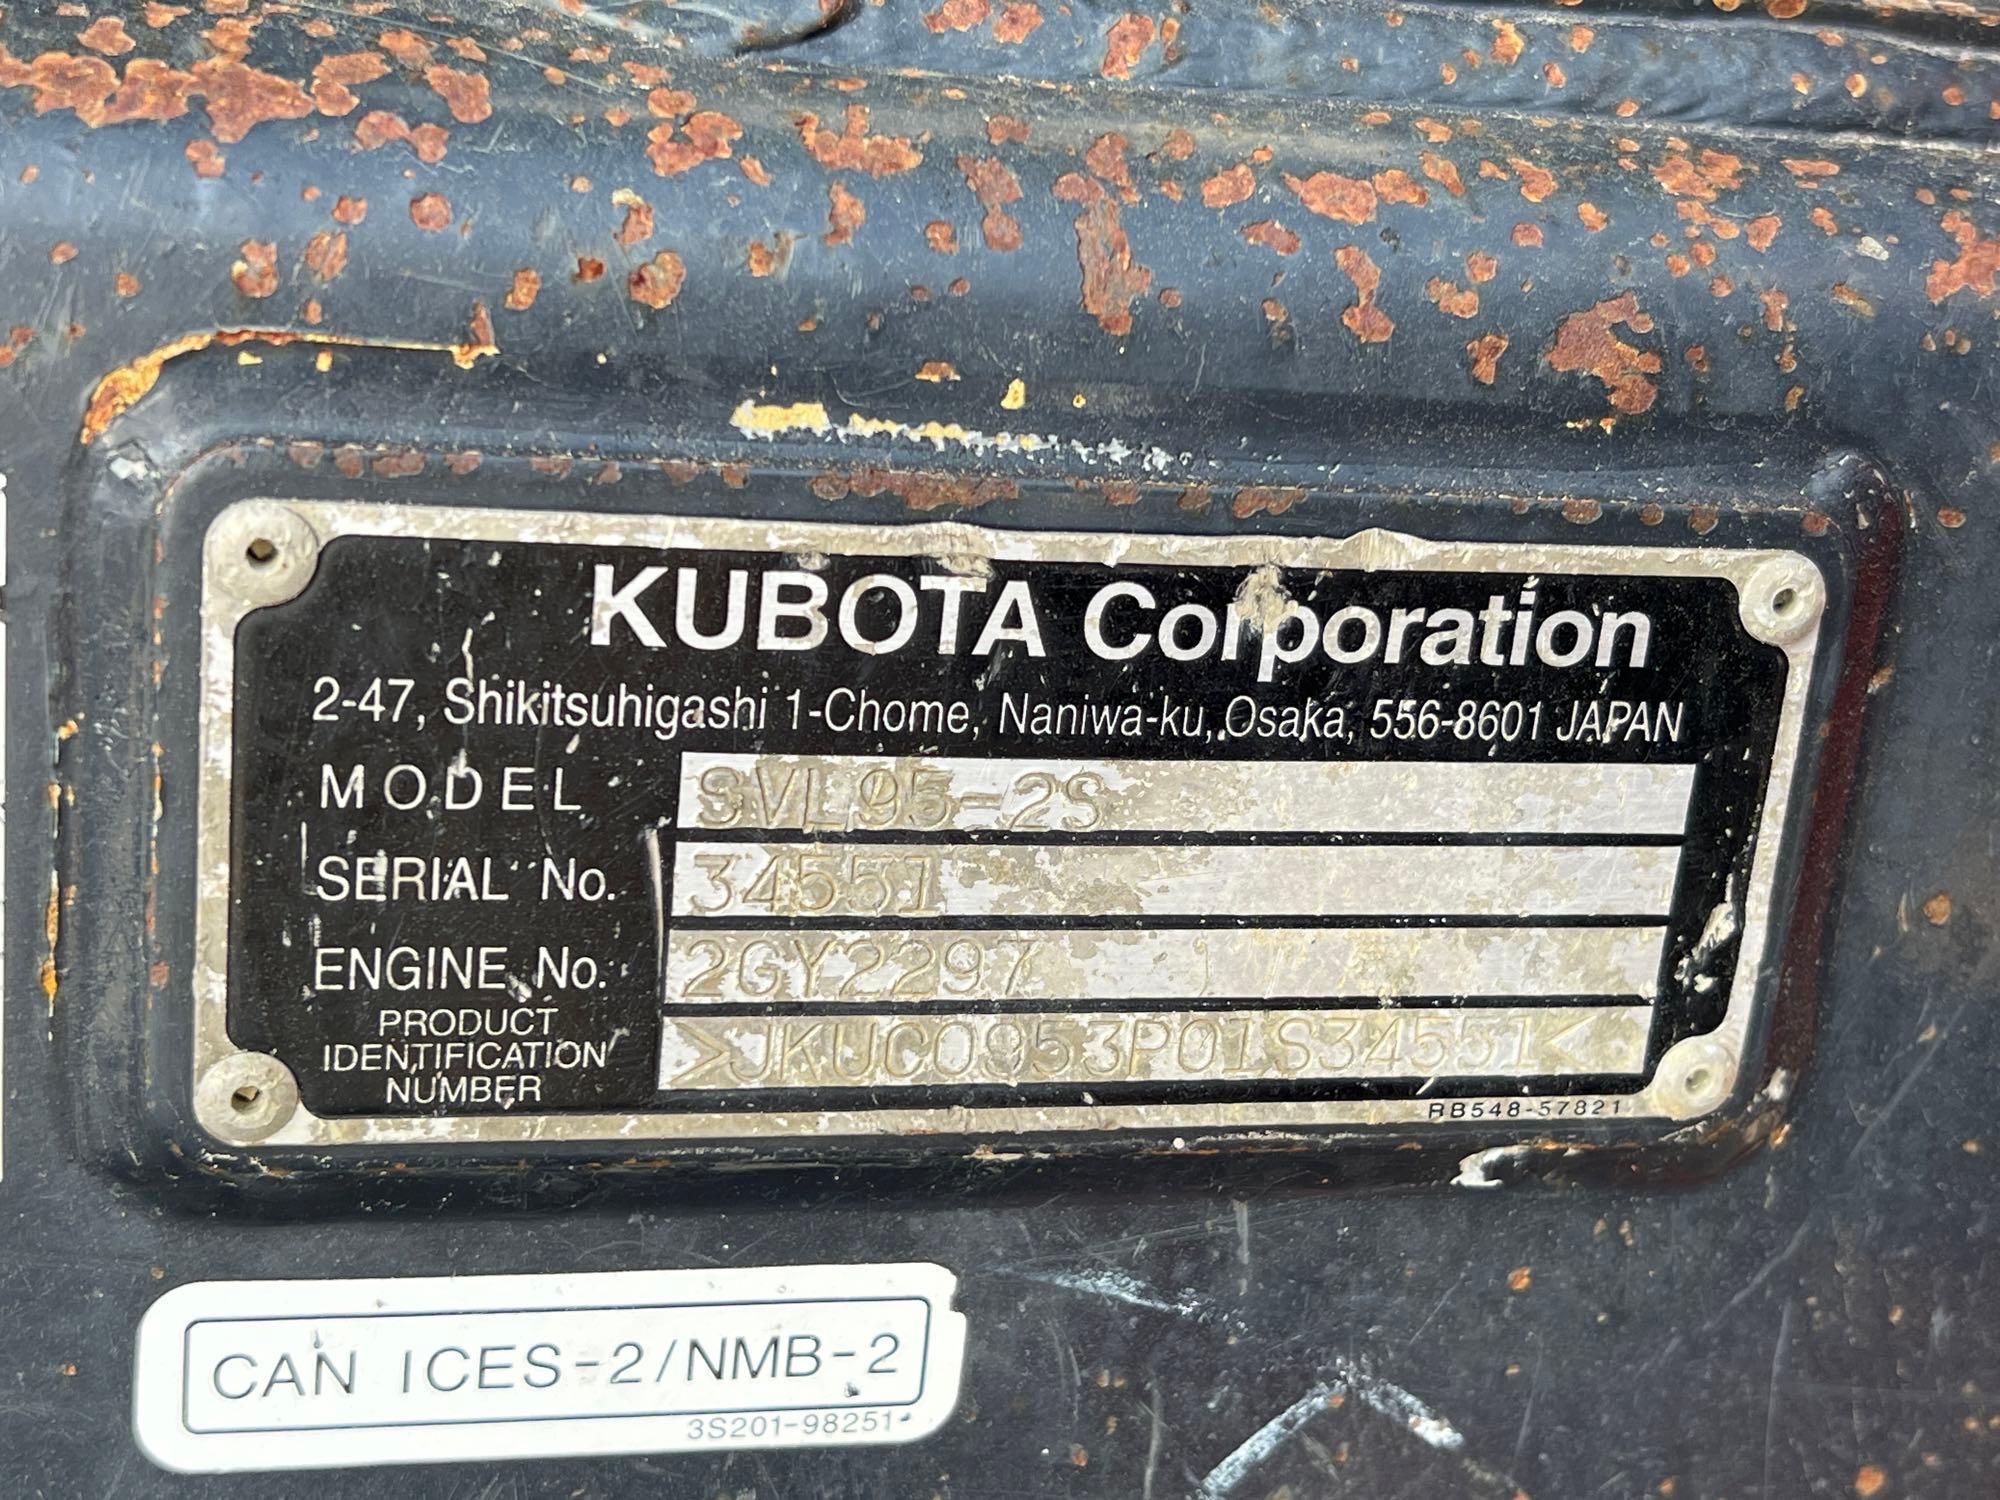 2020 KUBOTA SVL95-2SHFC RUBBER TRACKED SKID STEER SN:JKUC0953P01S34551 powered by Kubota diesel